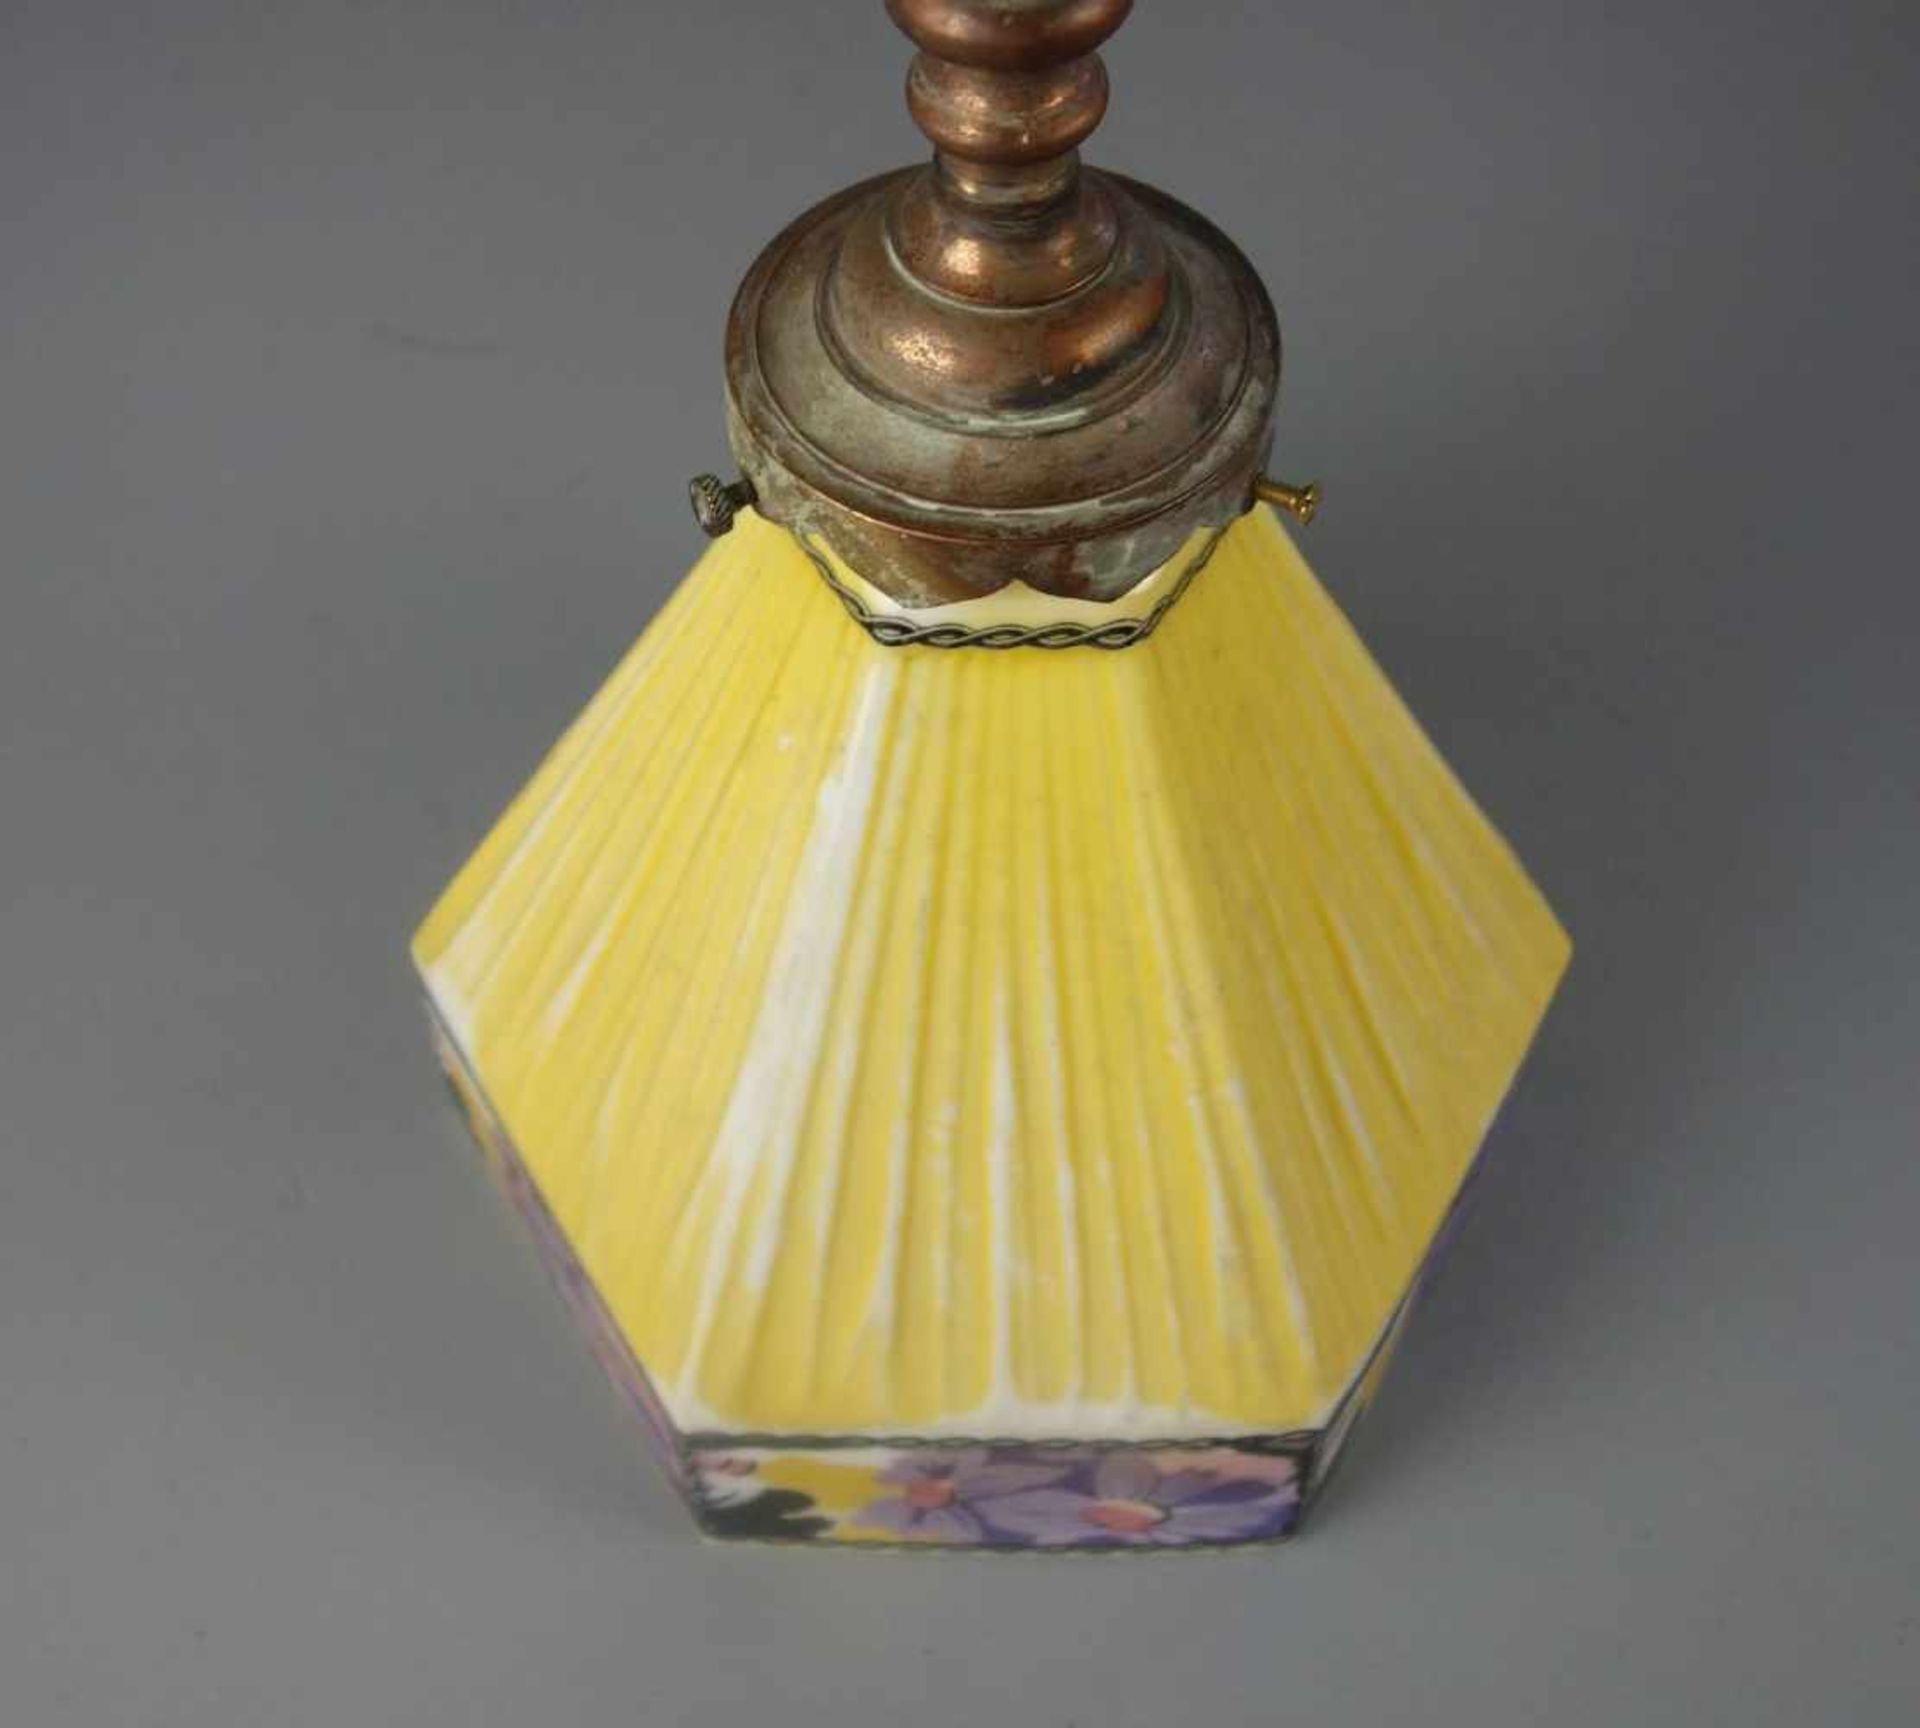 JUGENDSTIL - DECKENLAMPE / art nouveau lamp, um 1900. Profilierte und bronzierte Metallmontur mit - Image 3 of 3